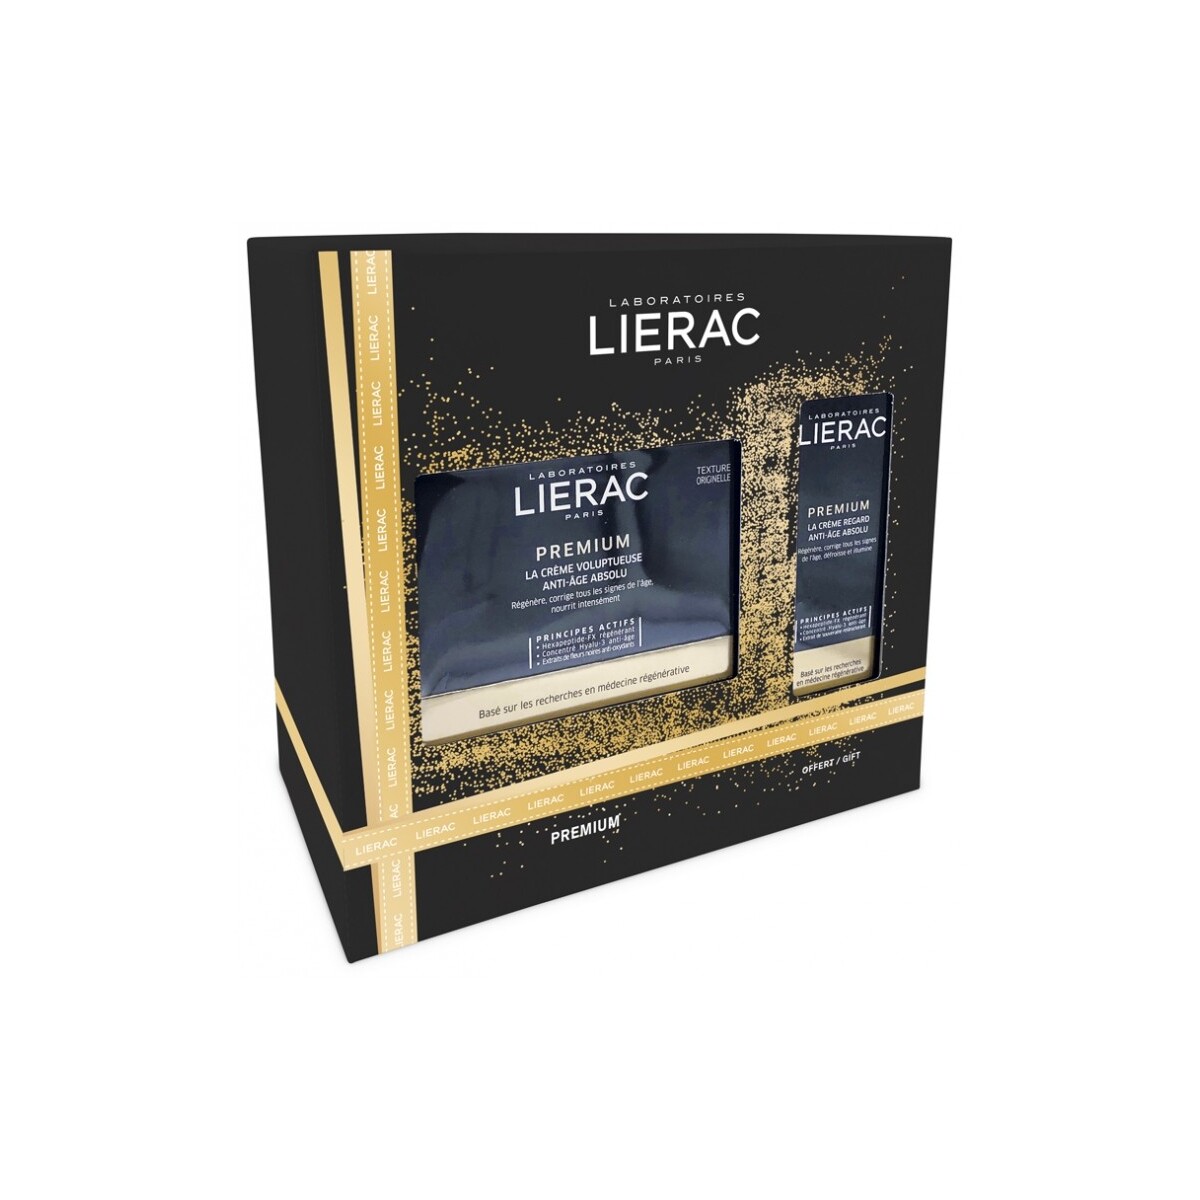 Lierac Premium The Voluptuous Creme Kuru Ciltler İçin Anti-Aging Gündüz Ve Gece Kremi Kofre